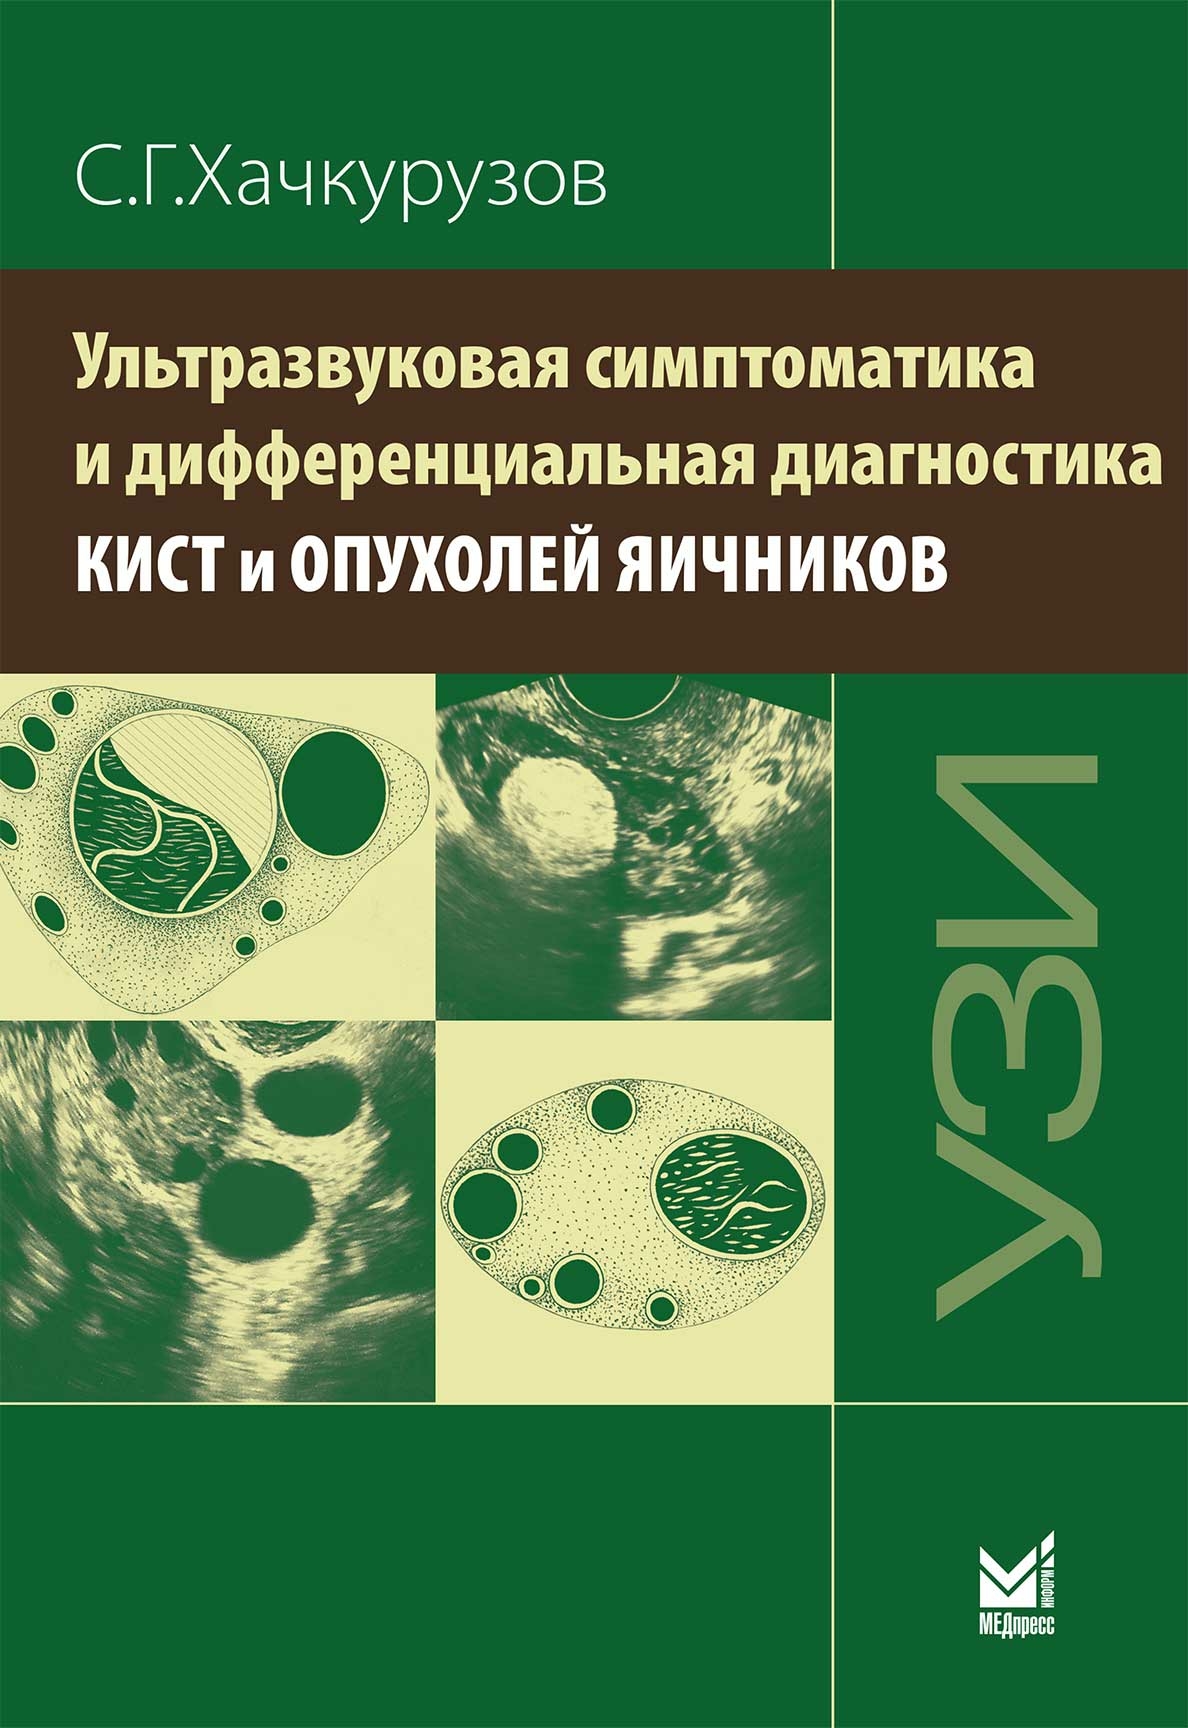 Хачкурузов С.Г. Ультразвуковая симптоматика и дифференциальная диагностика кист и опухолей яичников 